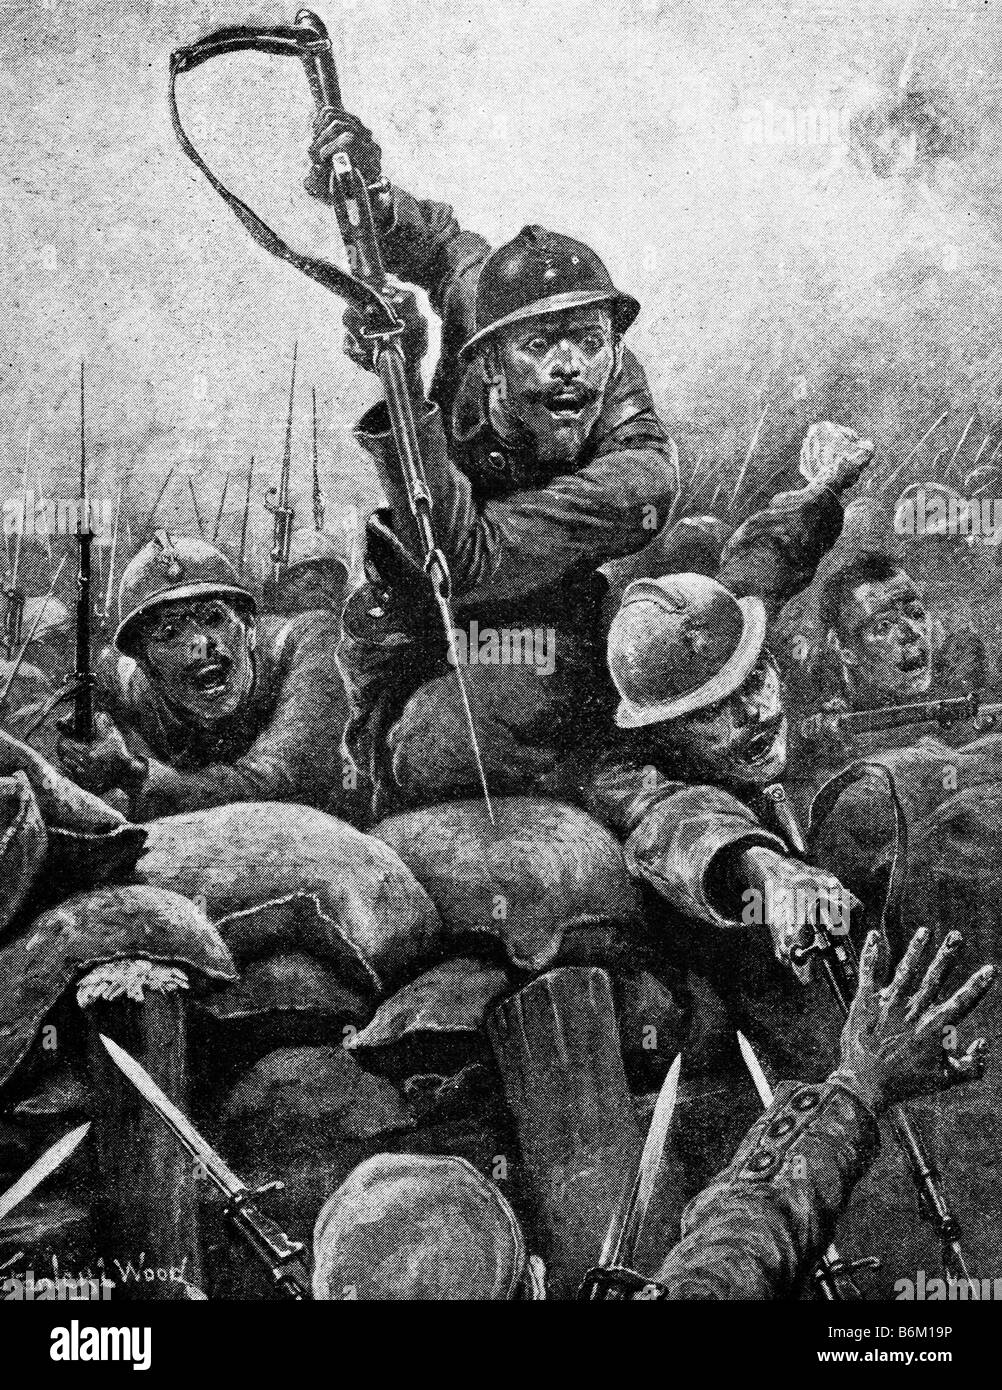 Ersten Weltkrieg zeitgenössische Illustration von französischen Soldaten stürmen einen deutschen Graben. Stockfoto